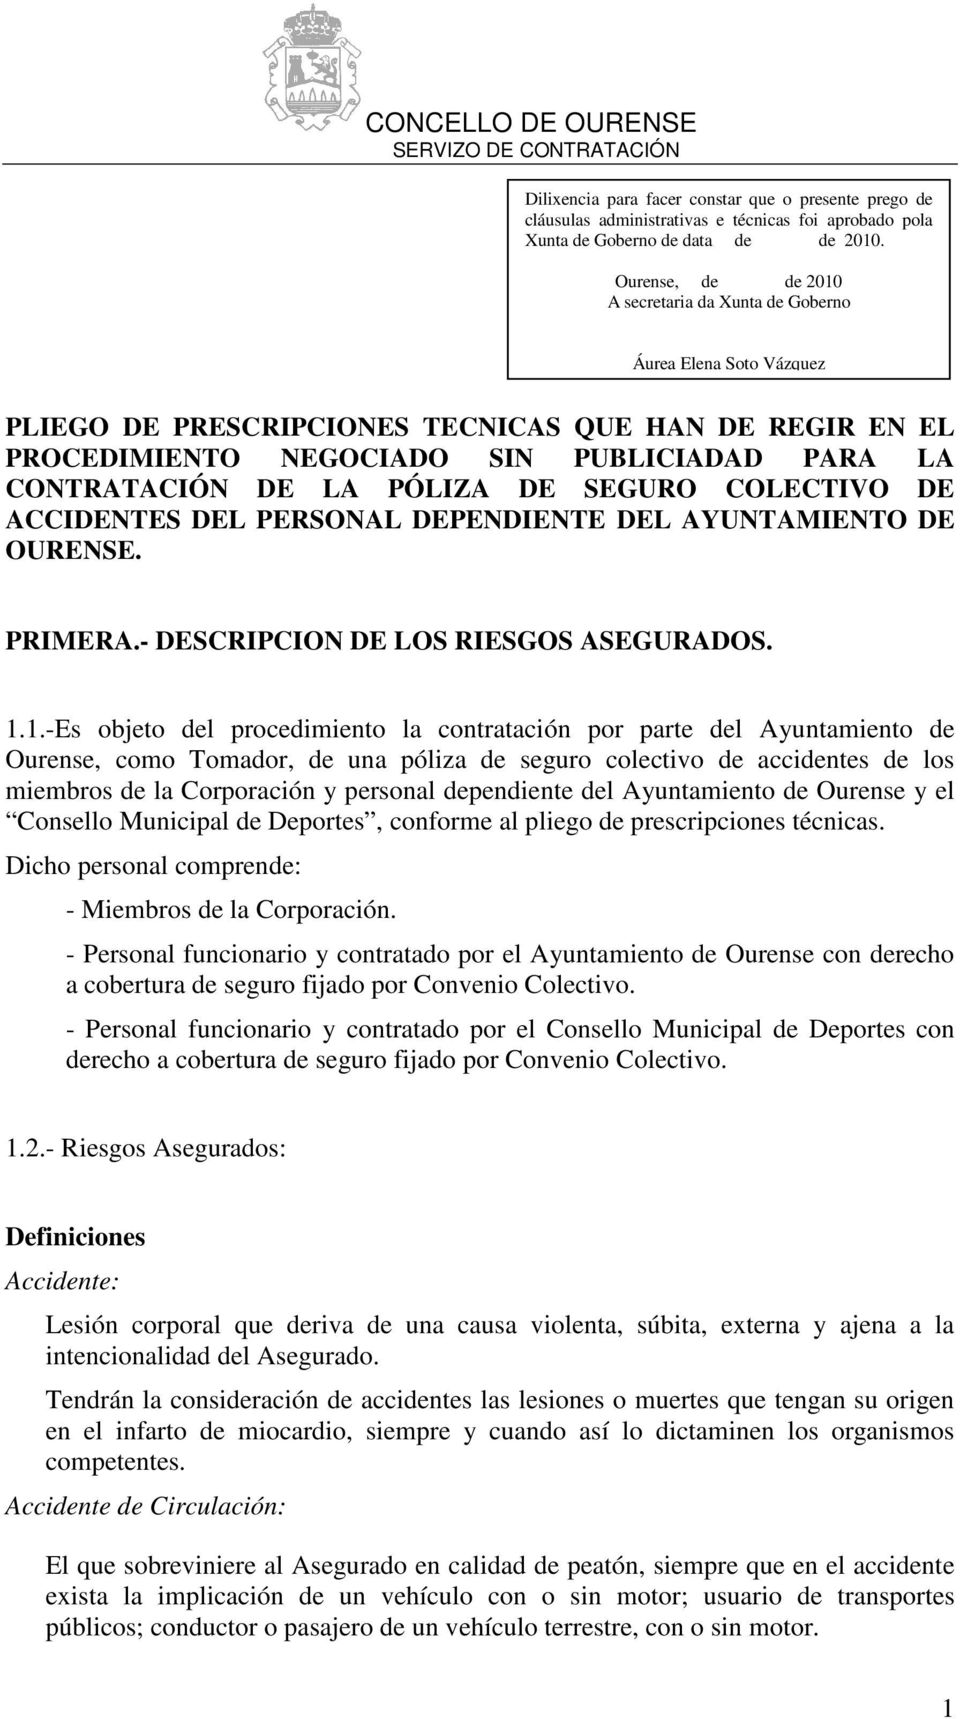 1.-Es objeto del procedimiento la contratación por parte del Ayuntamiento de Ourense, como Tomador, de una póliza de seguro colectivo de accidentes de los miembros de la Corporación y personal